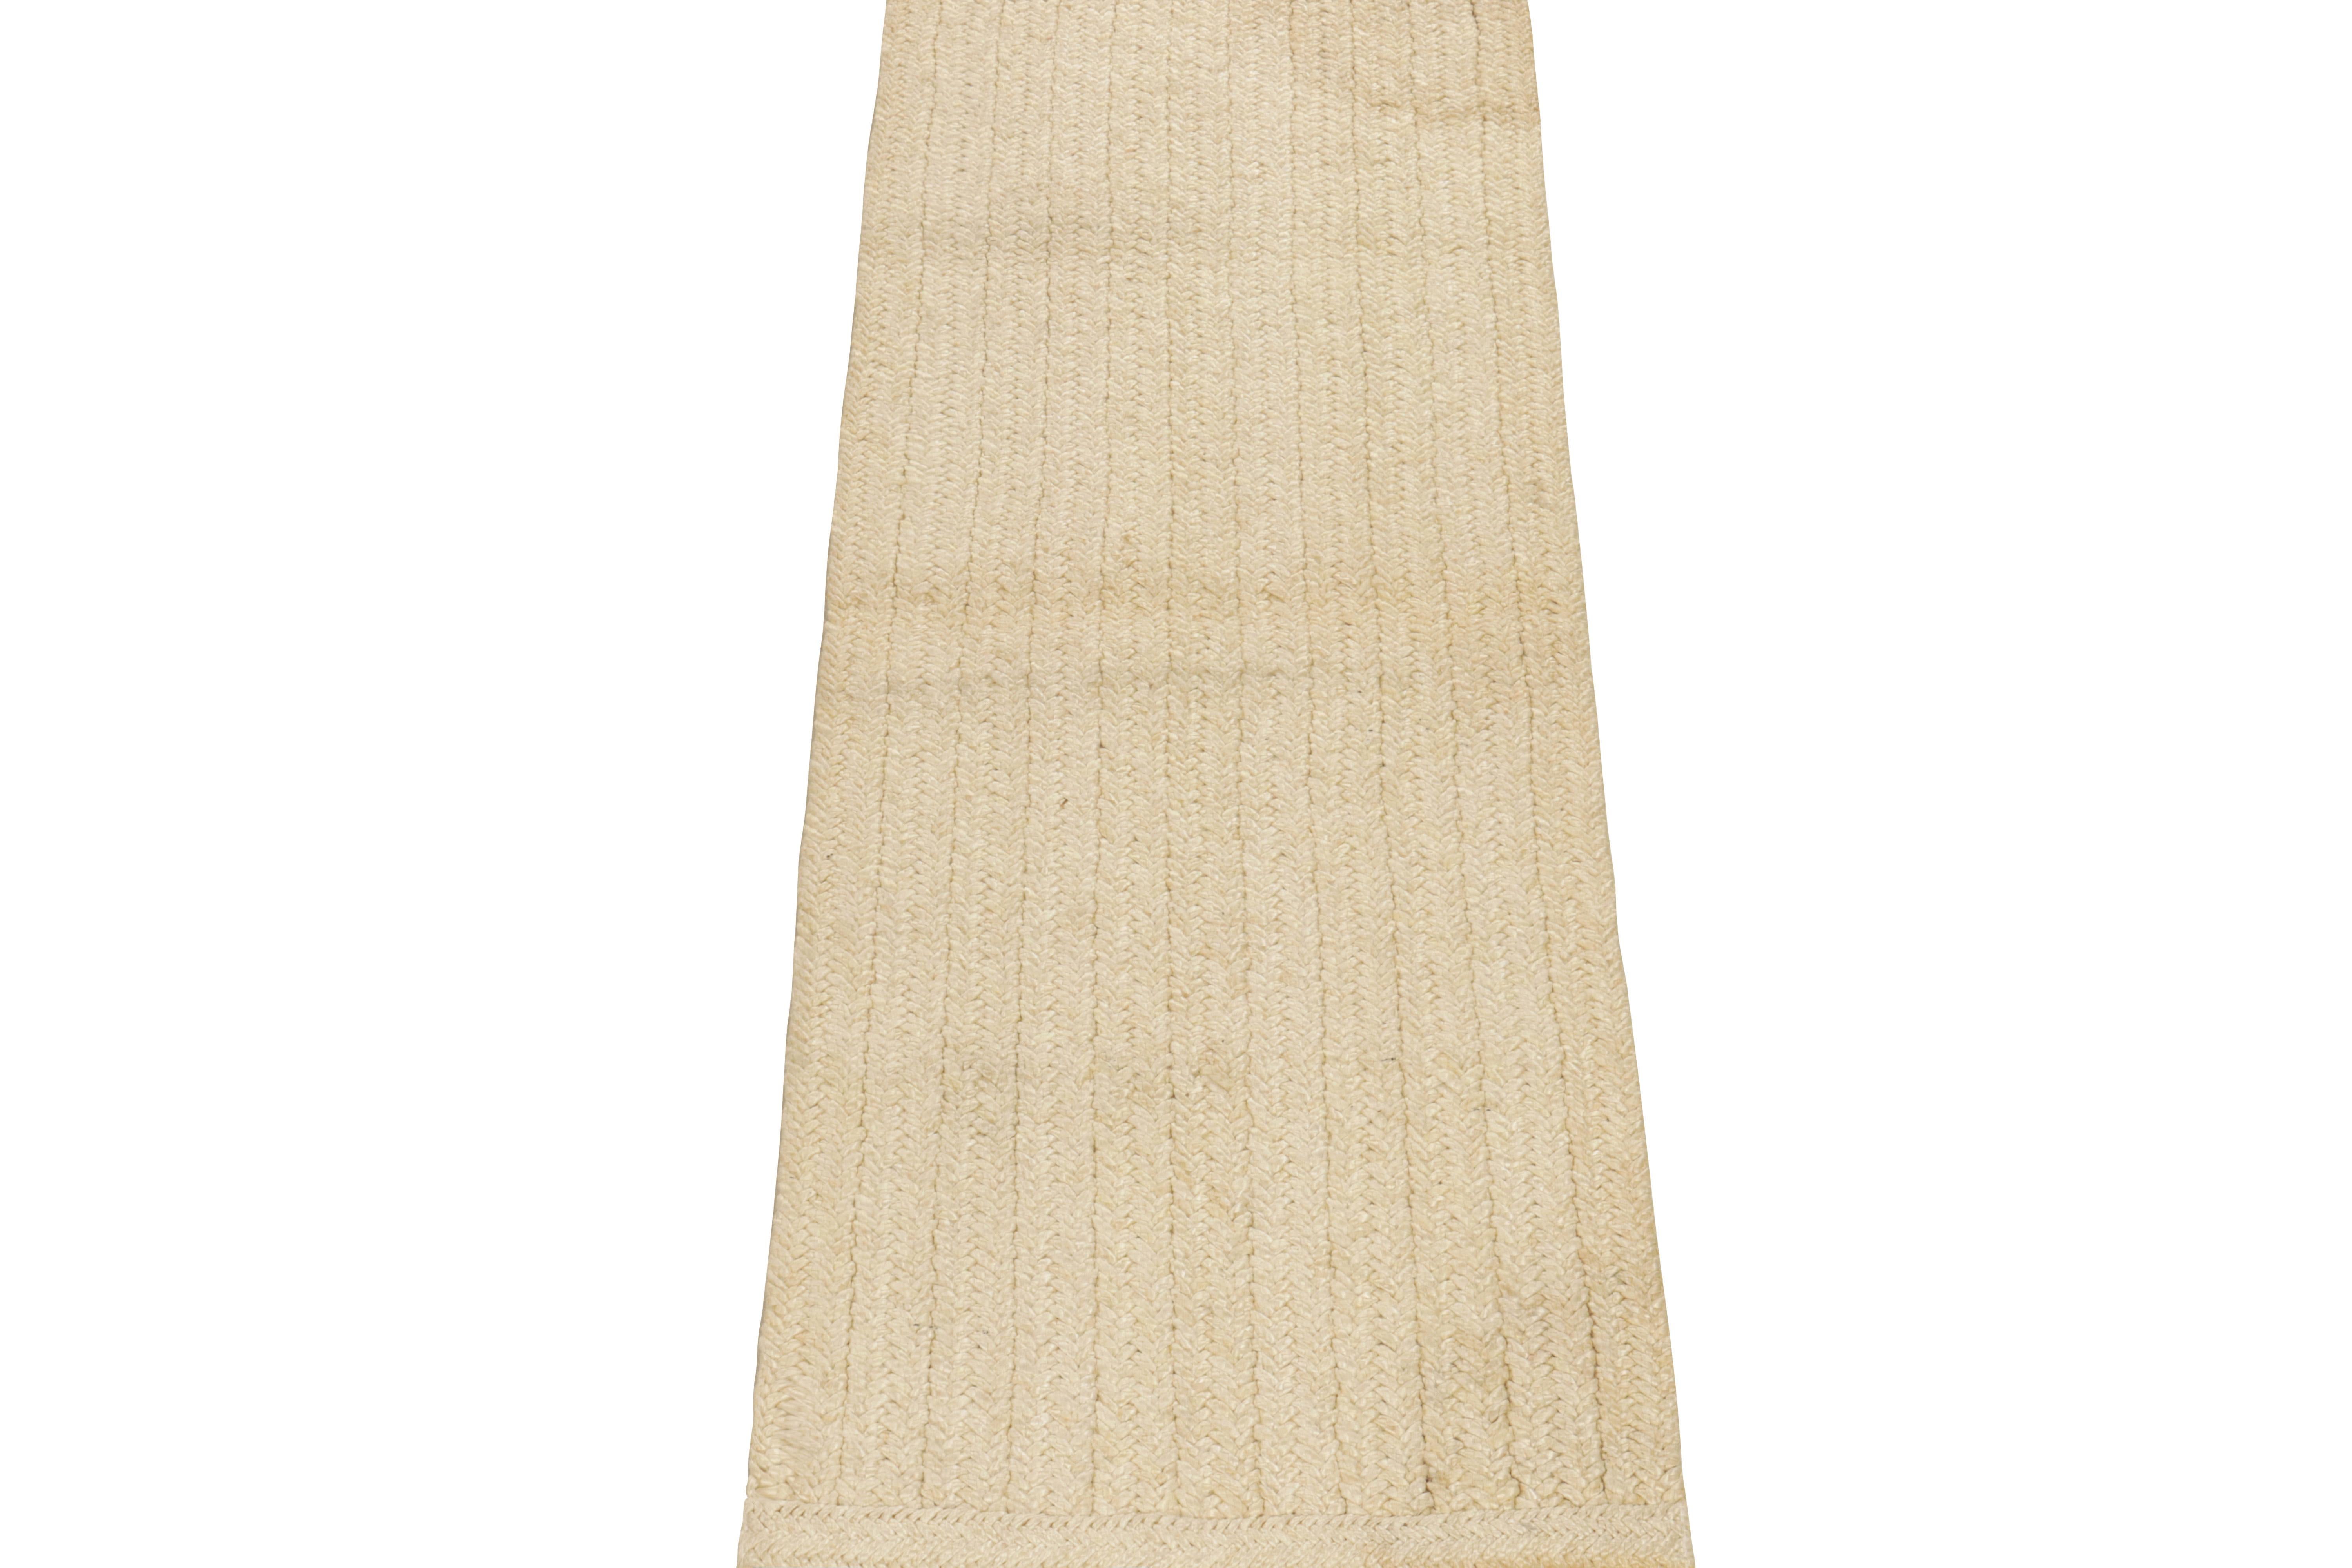 Der aus feiner Wolle geflochtene Läufer von Rug & Kilim ist eine raffinierte Interpretation moderner Ästhetik in ihrer Kollektion. Die Zöpfe blühen über die Skala in gebrochenem Weiß und cremefarbenen Beigetönen auf und sorgen so für eine